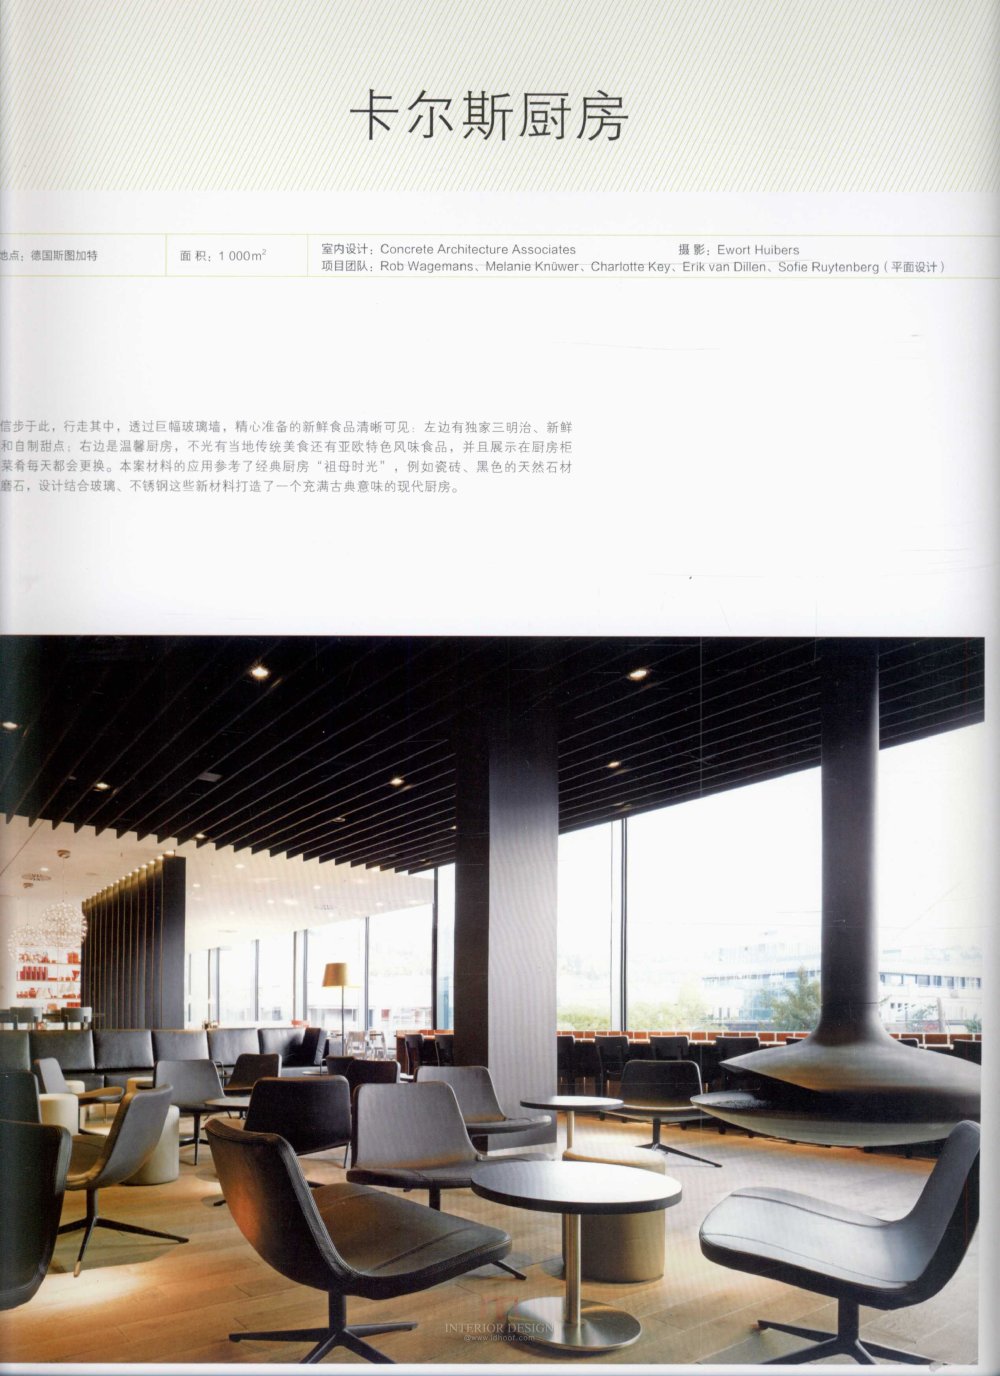 名家室内设计·餐饮空间_kobe 0014.jpg